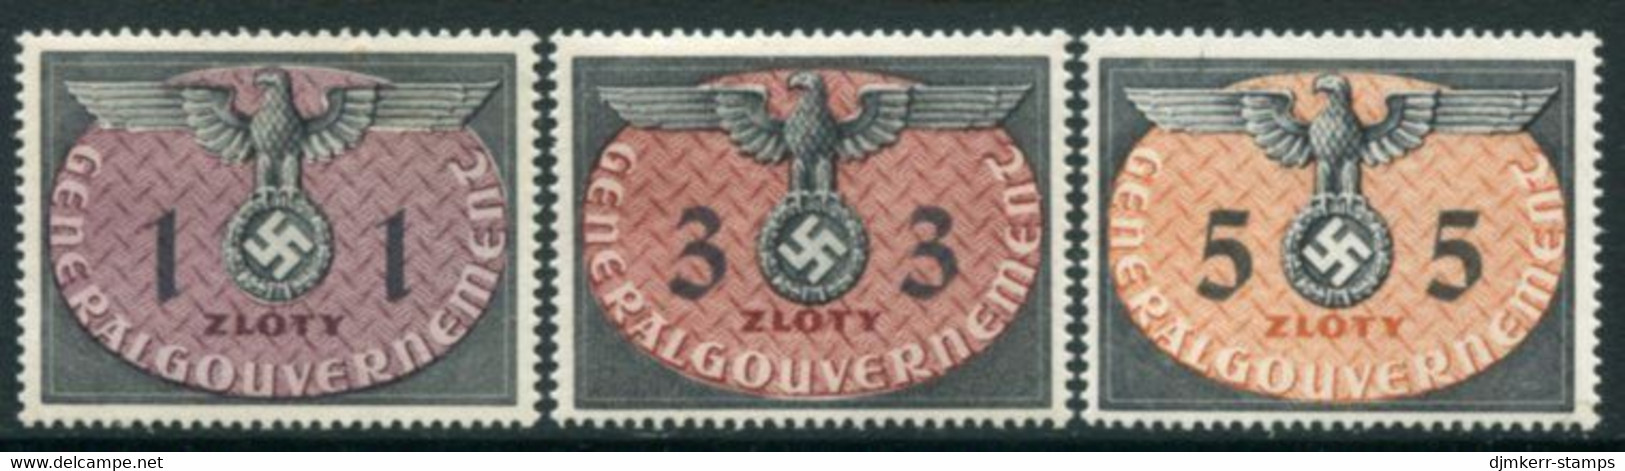 GENERAL GOVERNMENT 1940 Official Large Format 1-5 Zl. MNH / **.   Michel Dienst  13-15 - Gouvernement Général